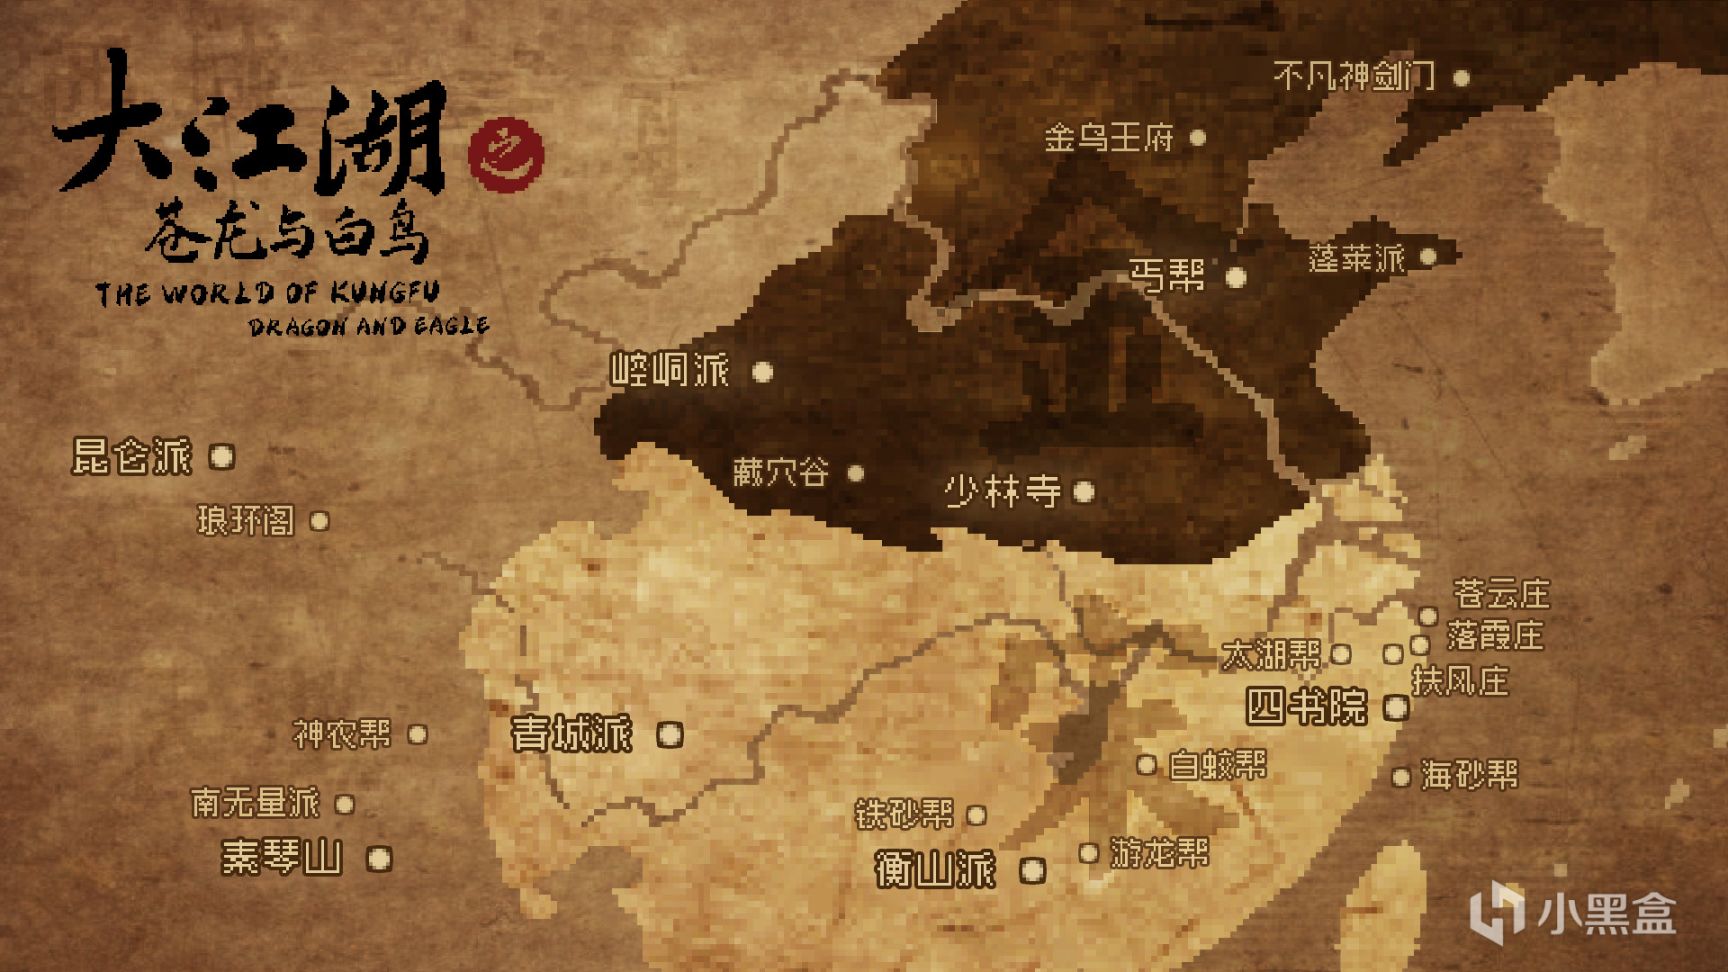 《大江湖之苍龙与白鸟》发行商由哔哩哔哩游戏变更为凉屋游戏 9%title%